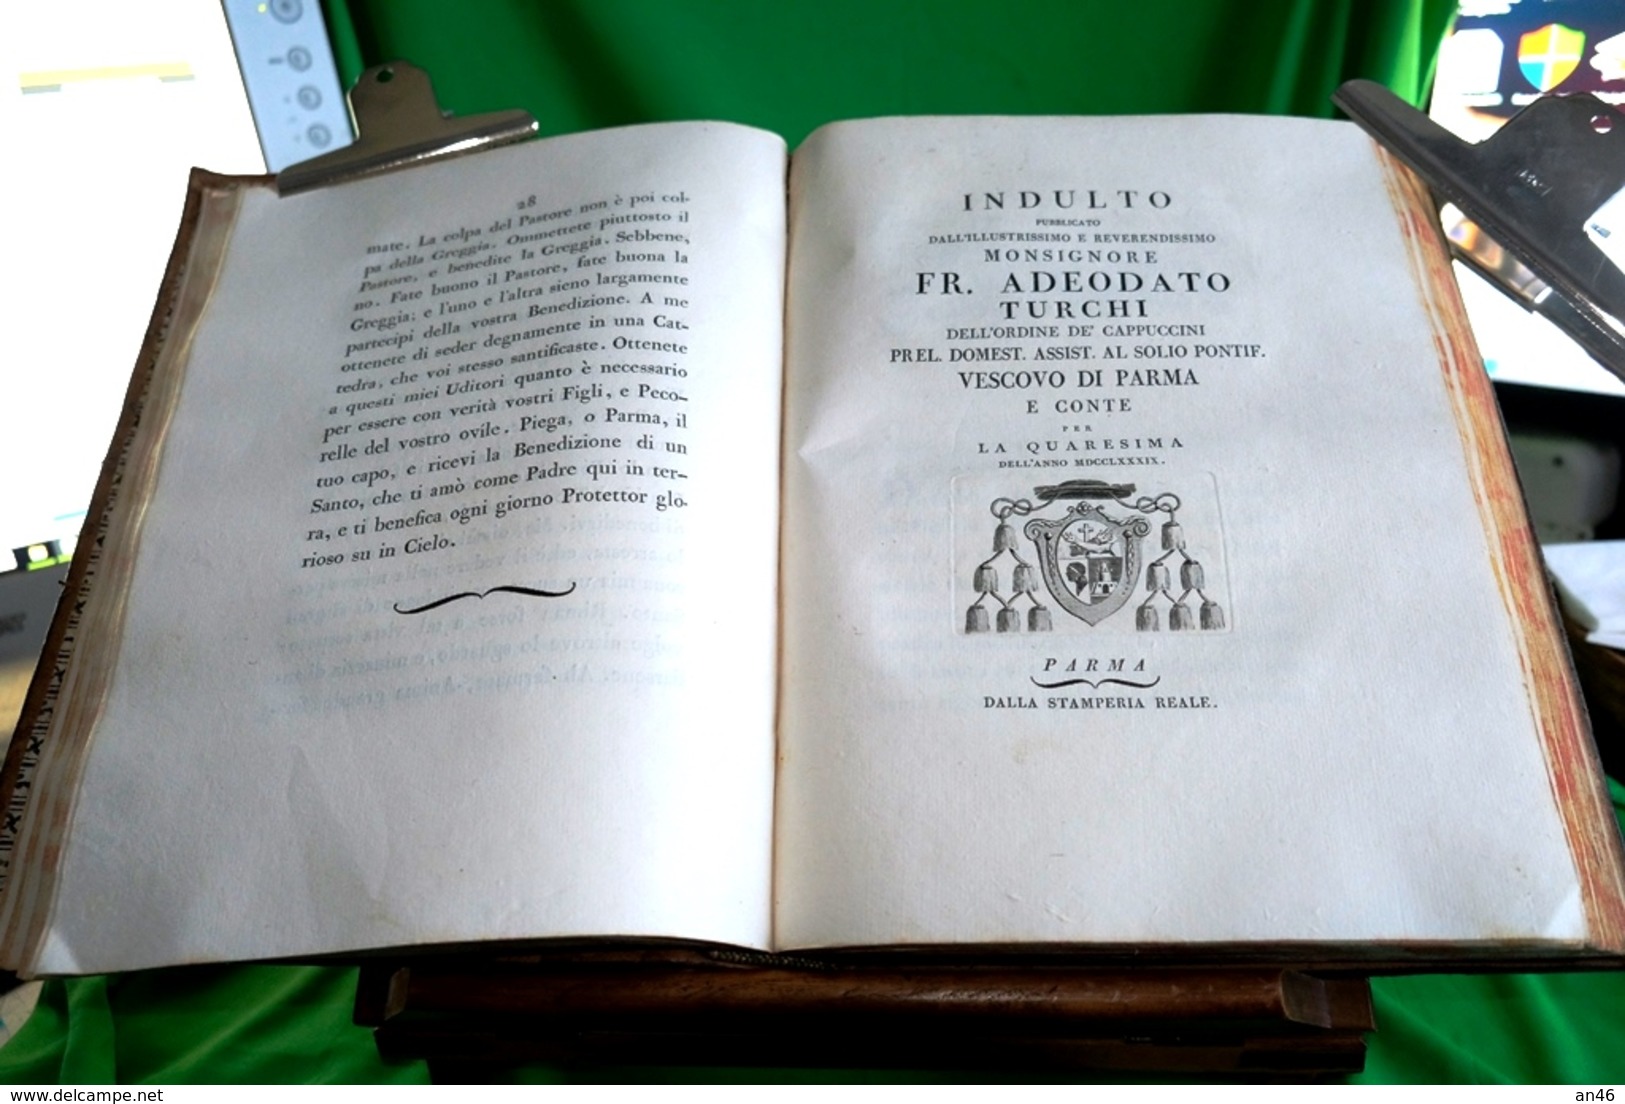 I°e II° Tomo_A.DEODATO TURCHI-OMELIE e LETTERE PASTORALI 1788-1792/5-1° edizione-stamperia reale di Parma-